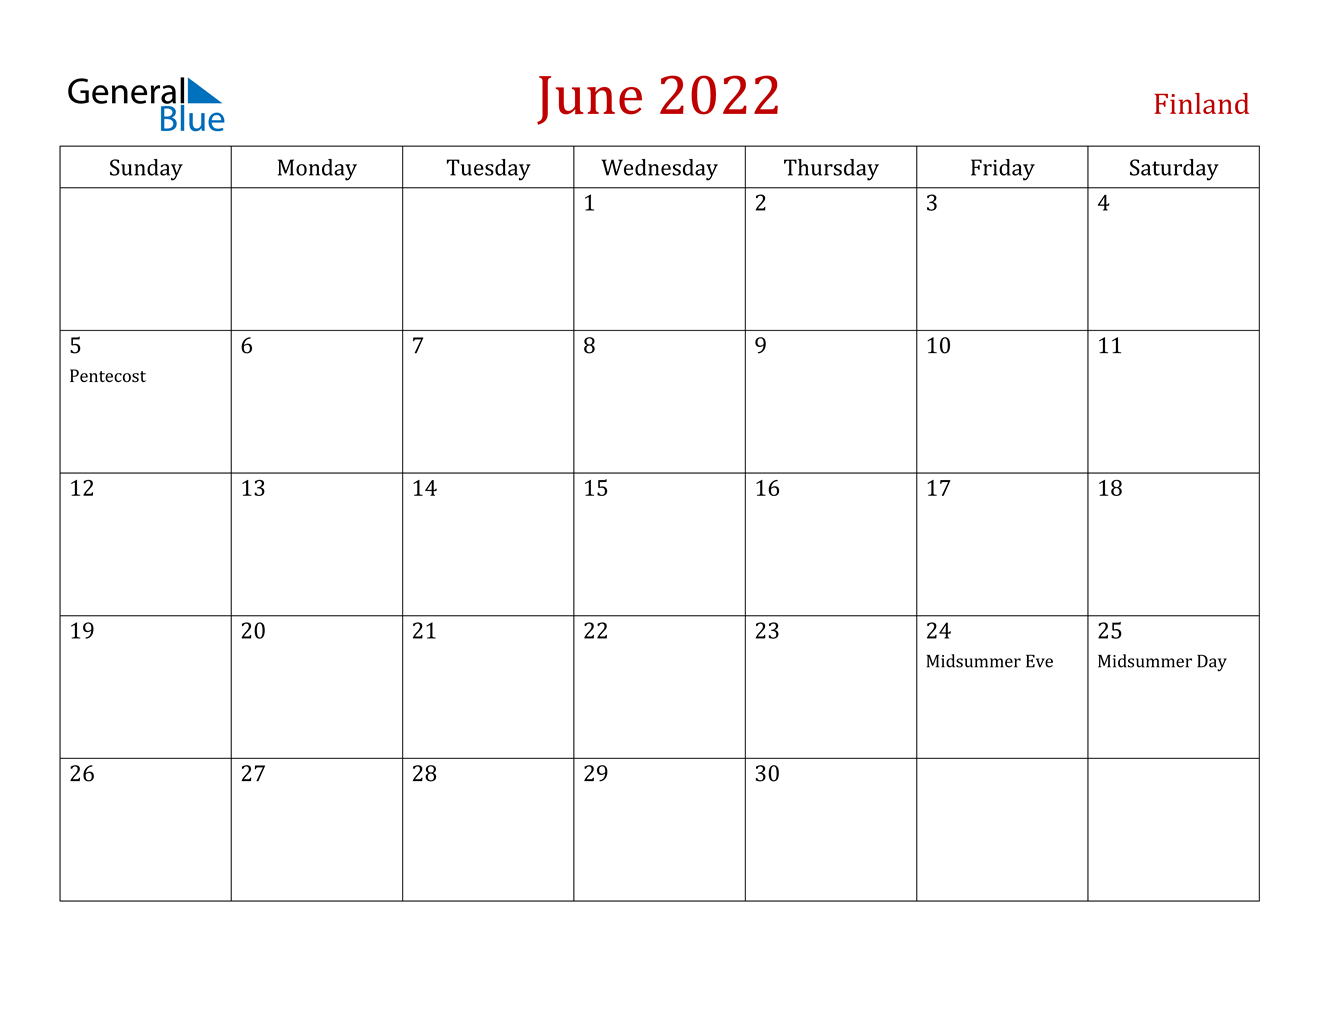 June 2022 Calendar - Finland